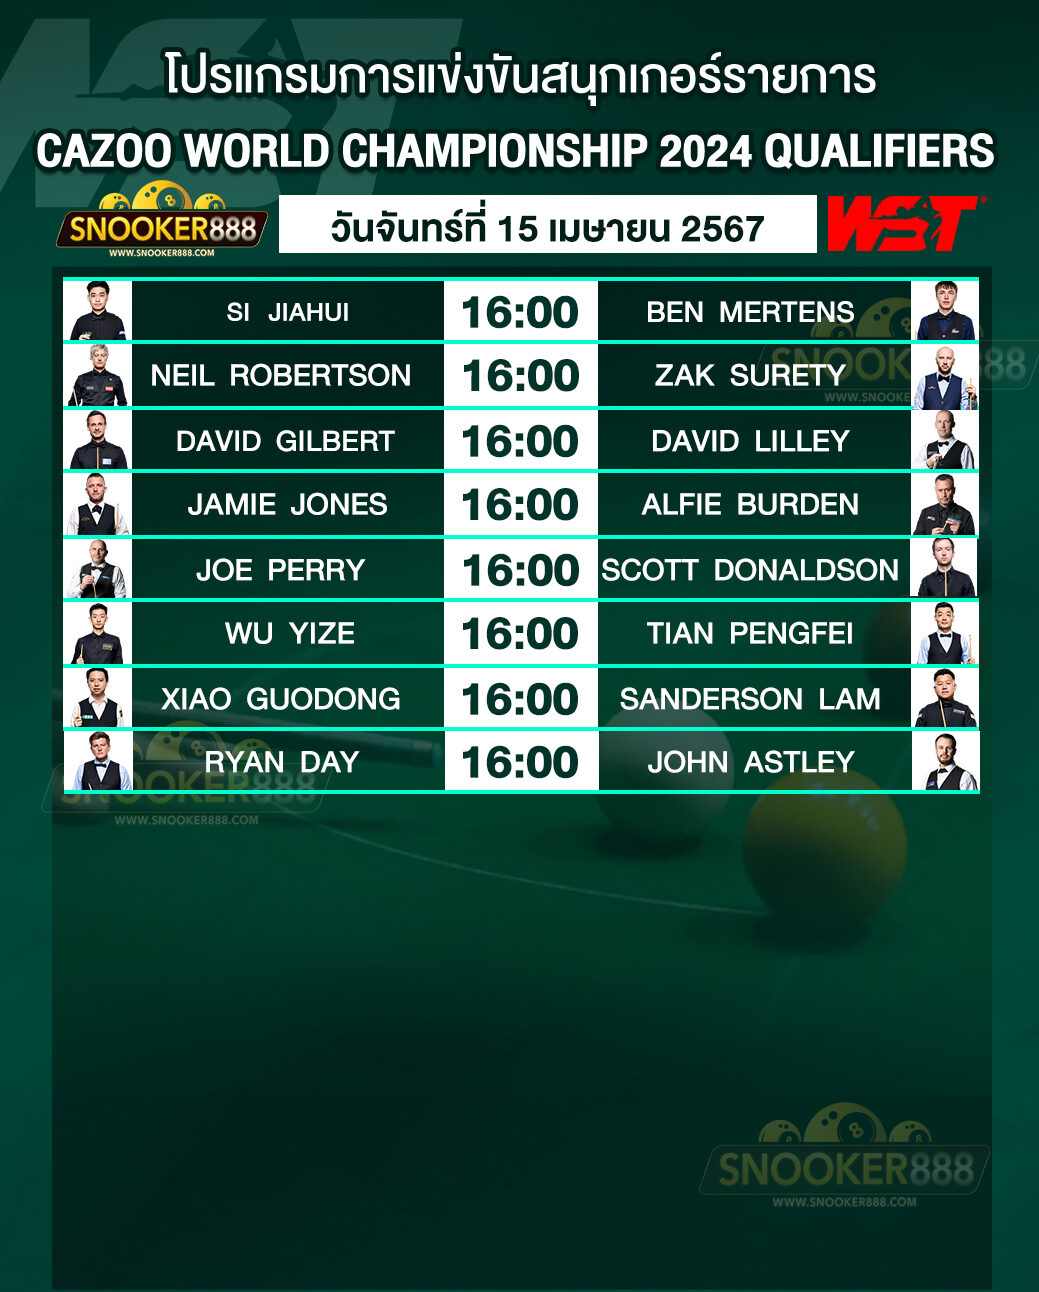 โปรแกรมการแข่งขันสนุกเกอร์ CAZOO WORLD CHAMPIONSHIP 2024 QUALIFIERS วันที่ 15 เม.ย. 67